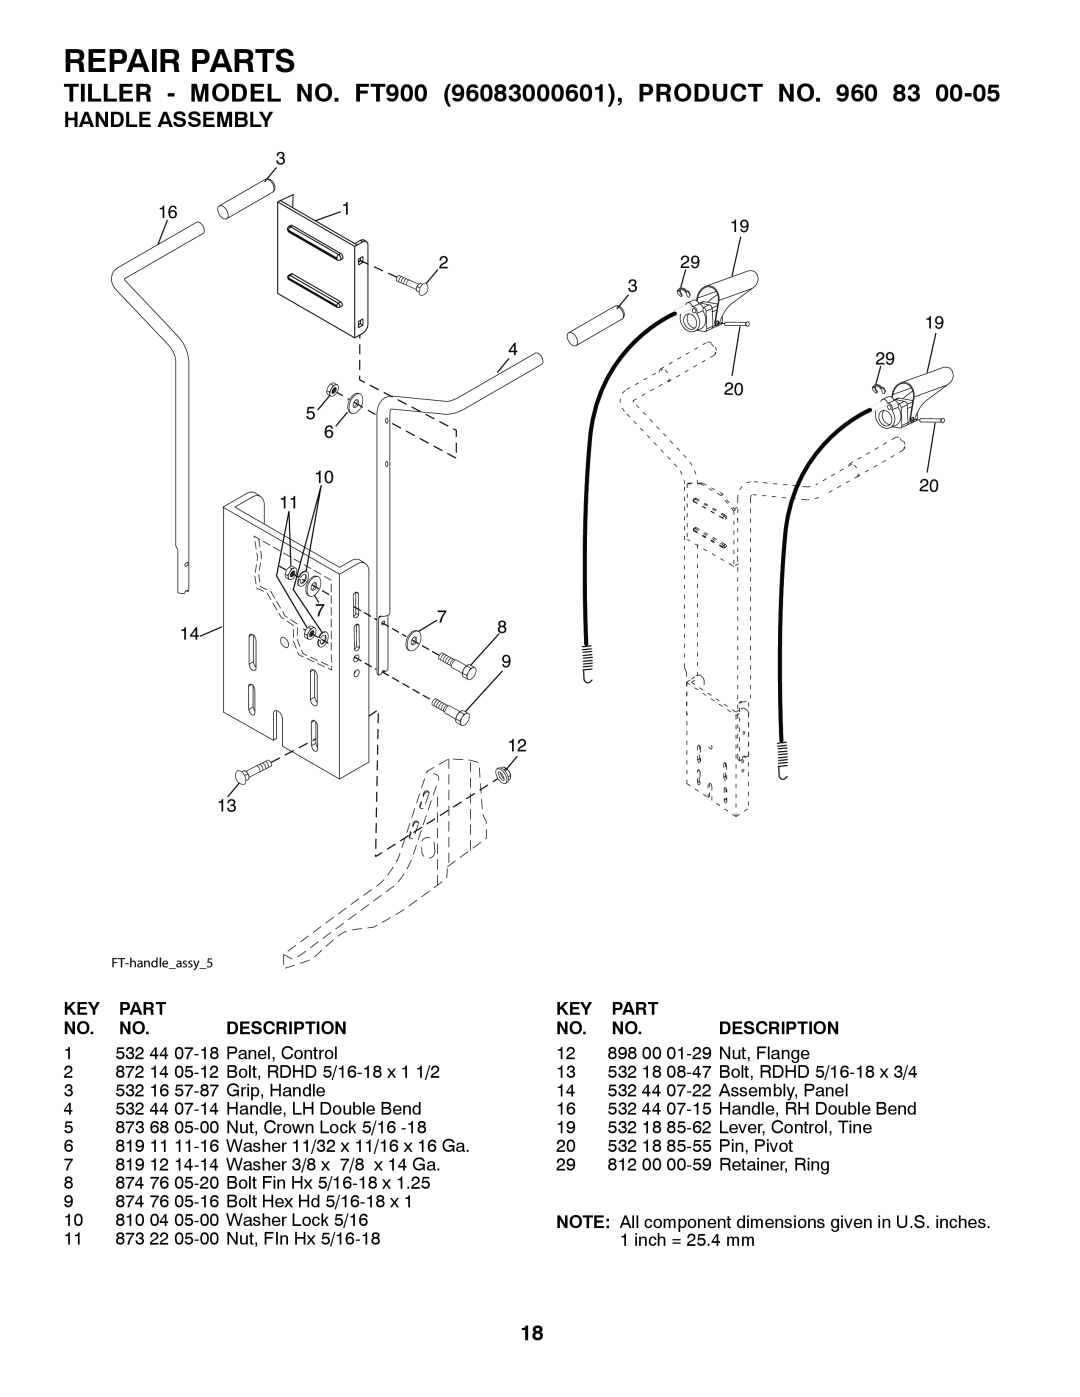 Husqvarna owner manual Repair Parts, TILLER - MODEL NO. FT900 96083000601, PRODUCT NO, Handle Assembly, Description 